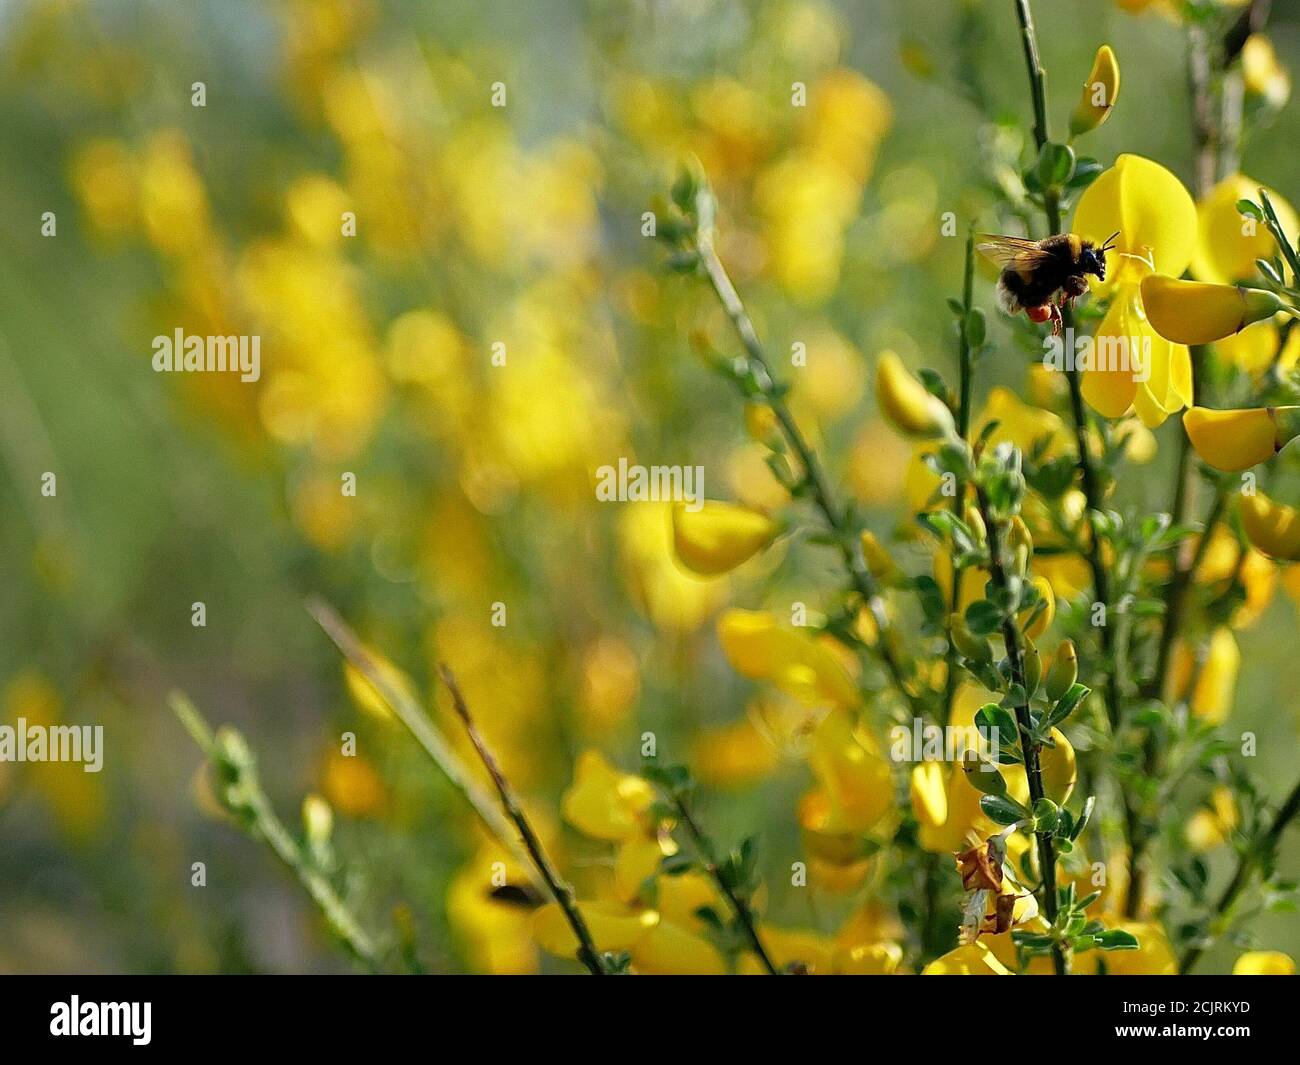 Biene an einer Blüte. Gelb und Grün gemischtes Bild. Stock Photo